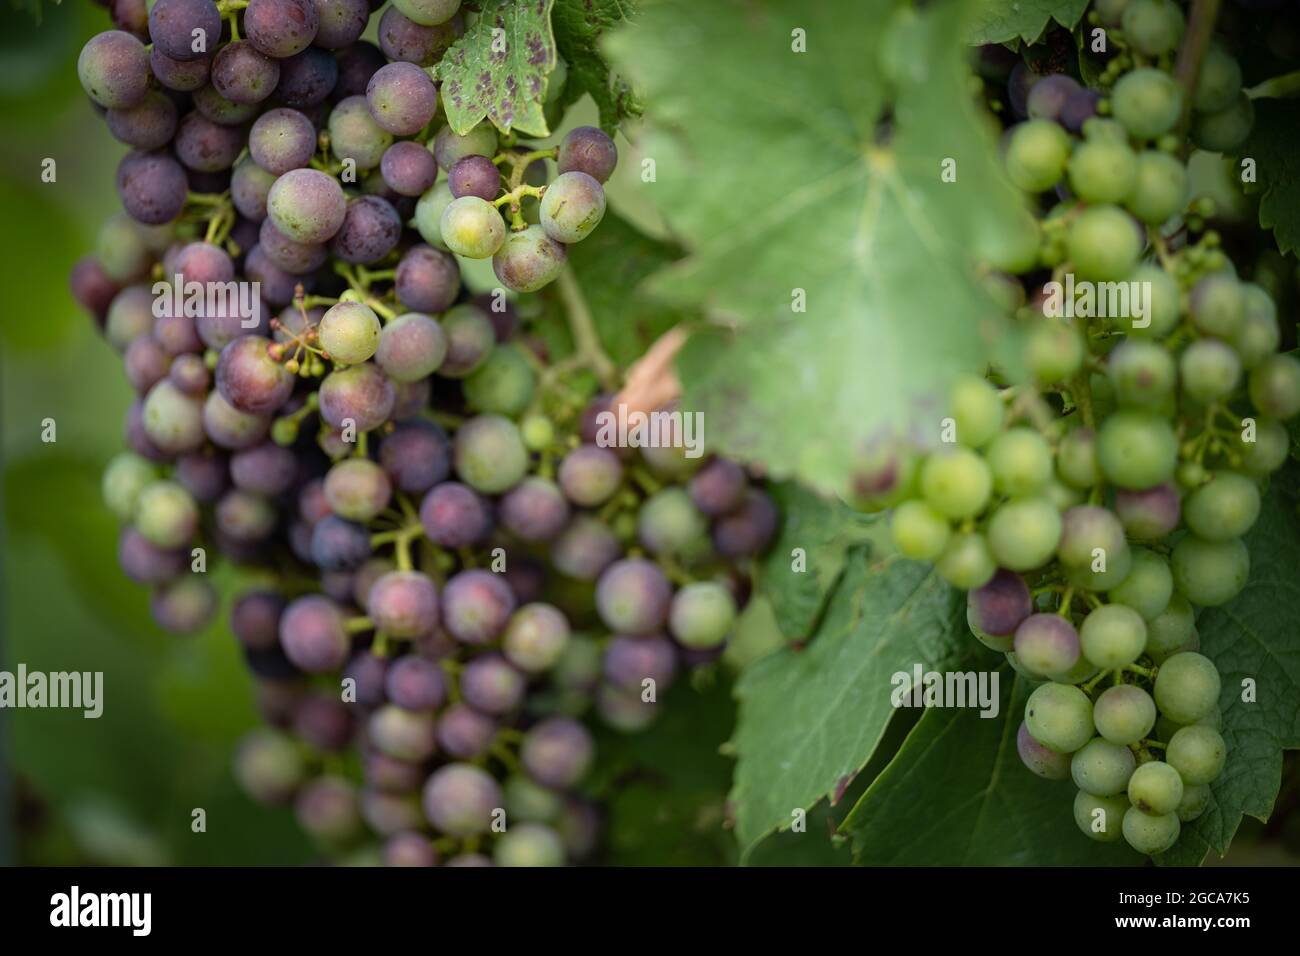 Natur, Deutschland, Rheinland-Pfalz, Hochstadt, Weinberg, August 07. rote und grüne Wein Trauben hängen an einer Weinrebe auf einem pfälzischen Winger Stock Photo